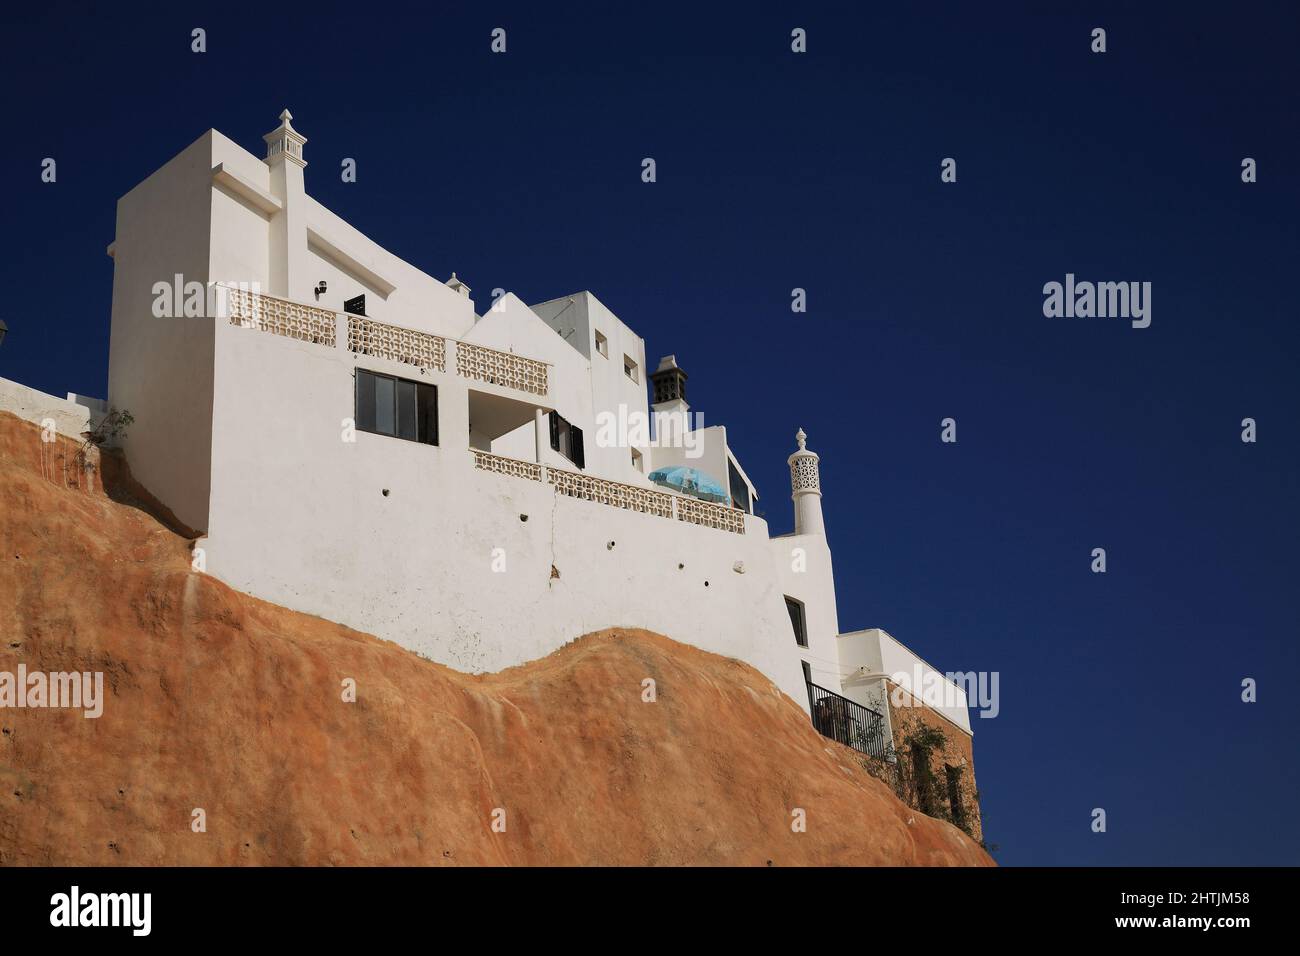 Häuser und Hotels an der Steilküste des Strand von Albufeira an der Algarve, Portugal Stock Photo